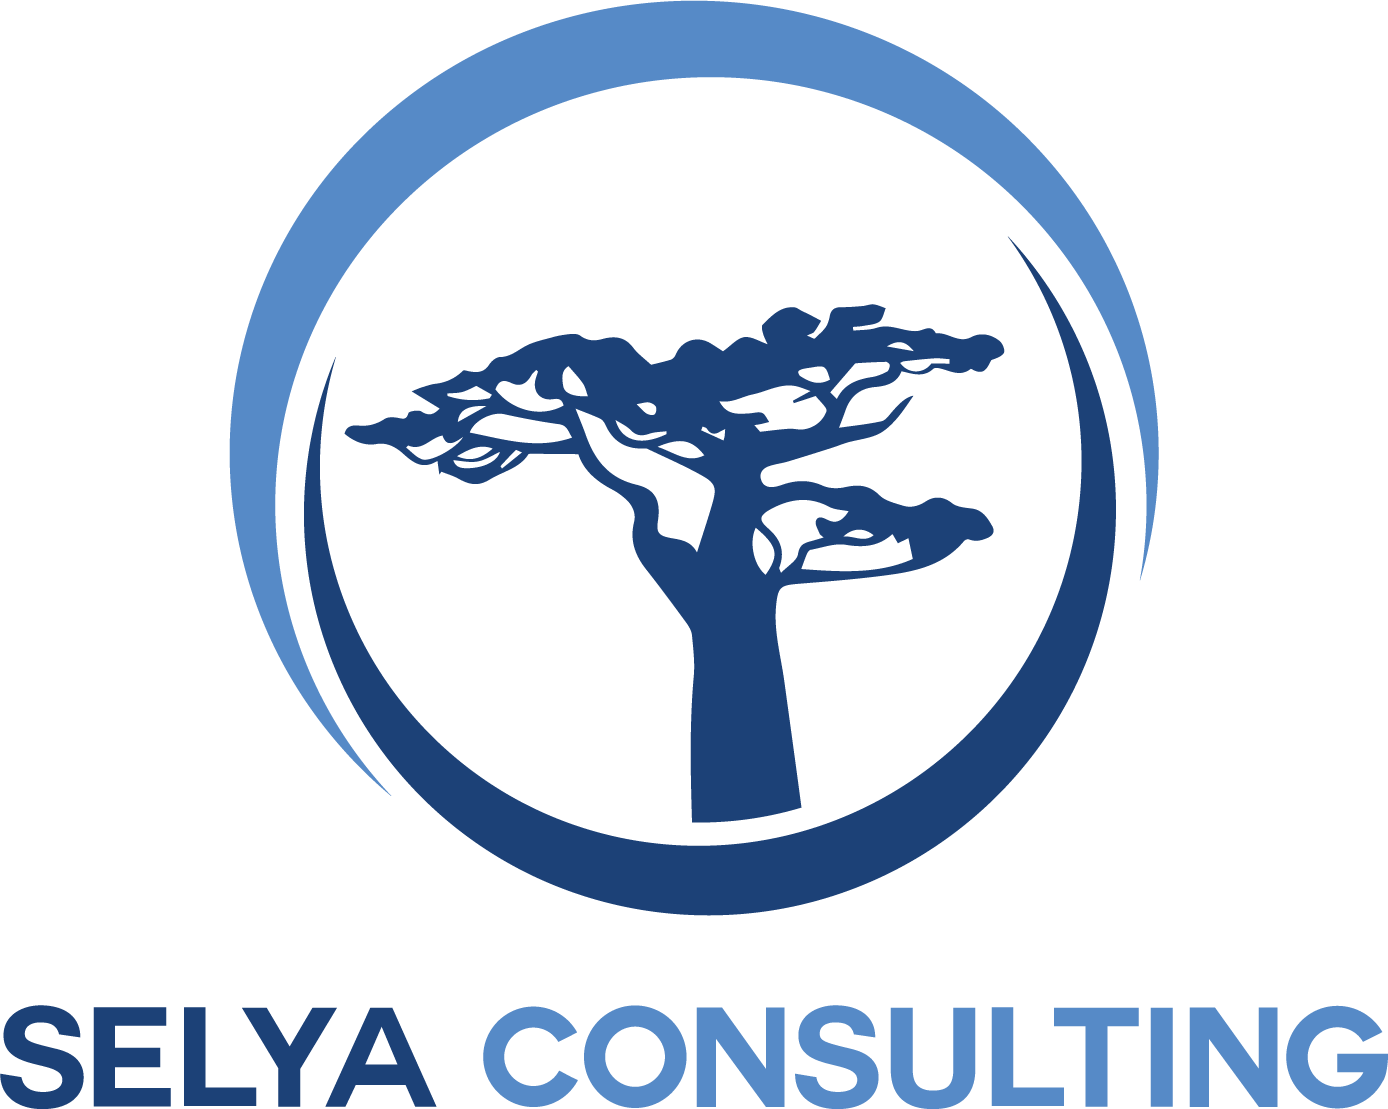 Selya Consulting SELYA CONSULTING est un cabinet de conseil en conformité réglementaire qui accompagne les professionnels en finance assujettis aux contrôles de l’AMF et l’ACPR. SELYA CONSULTING se distingue par sa double compréhension des attentes des régulateurs et des exigences propres à votre métier.